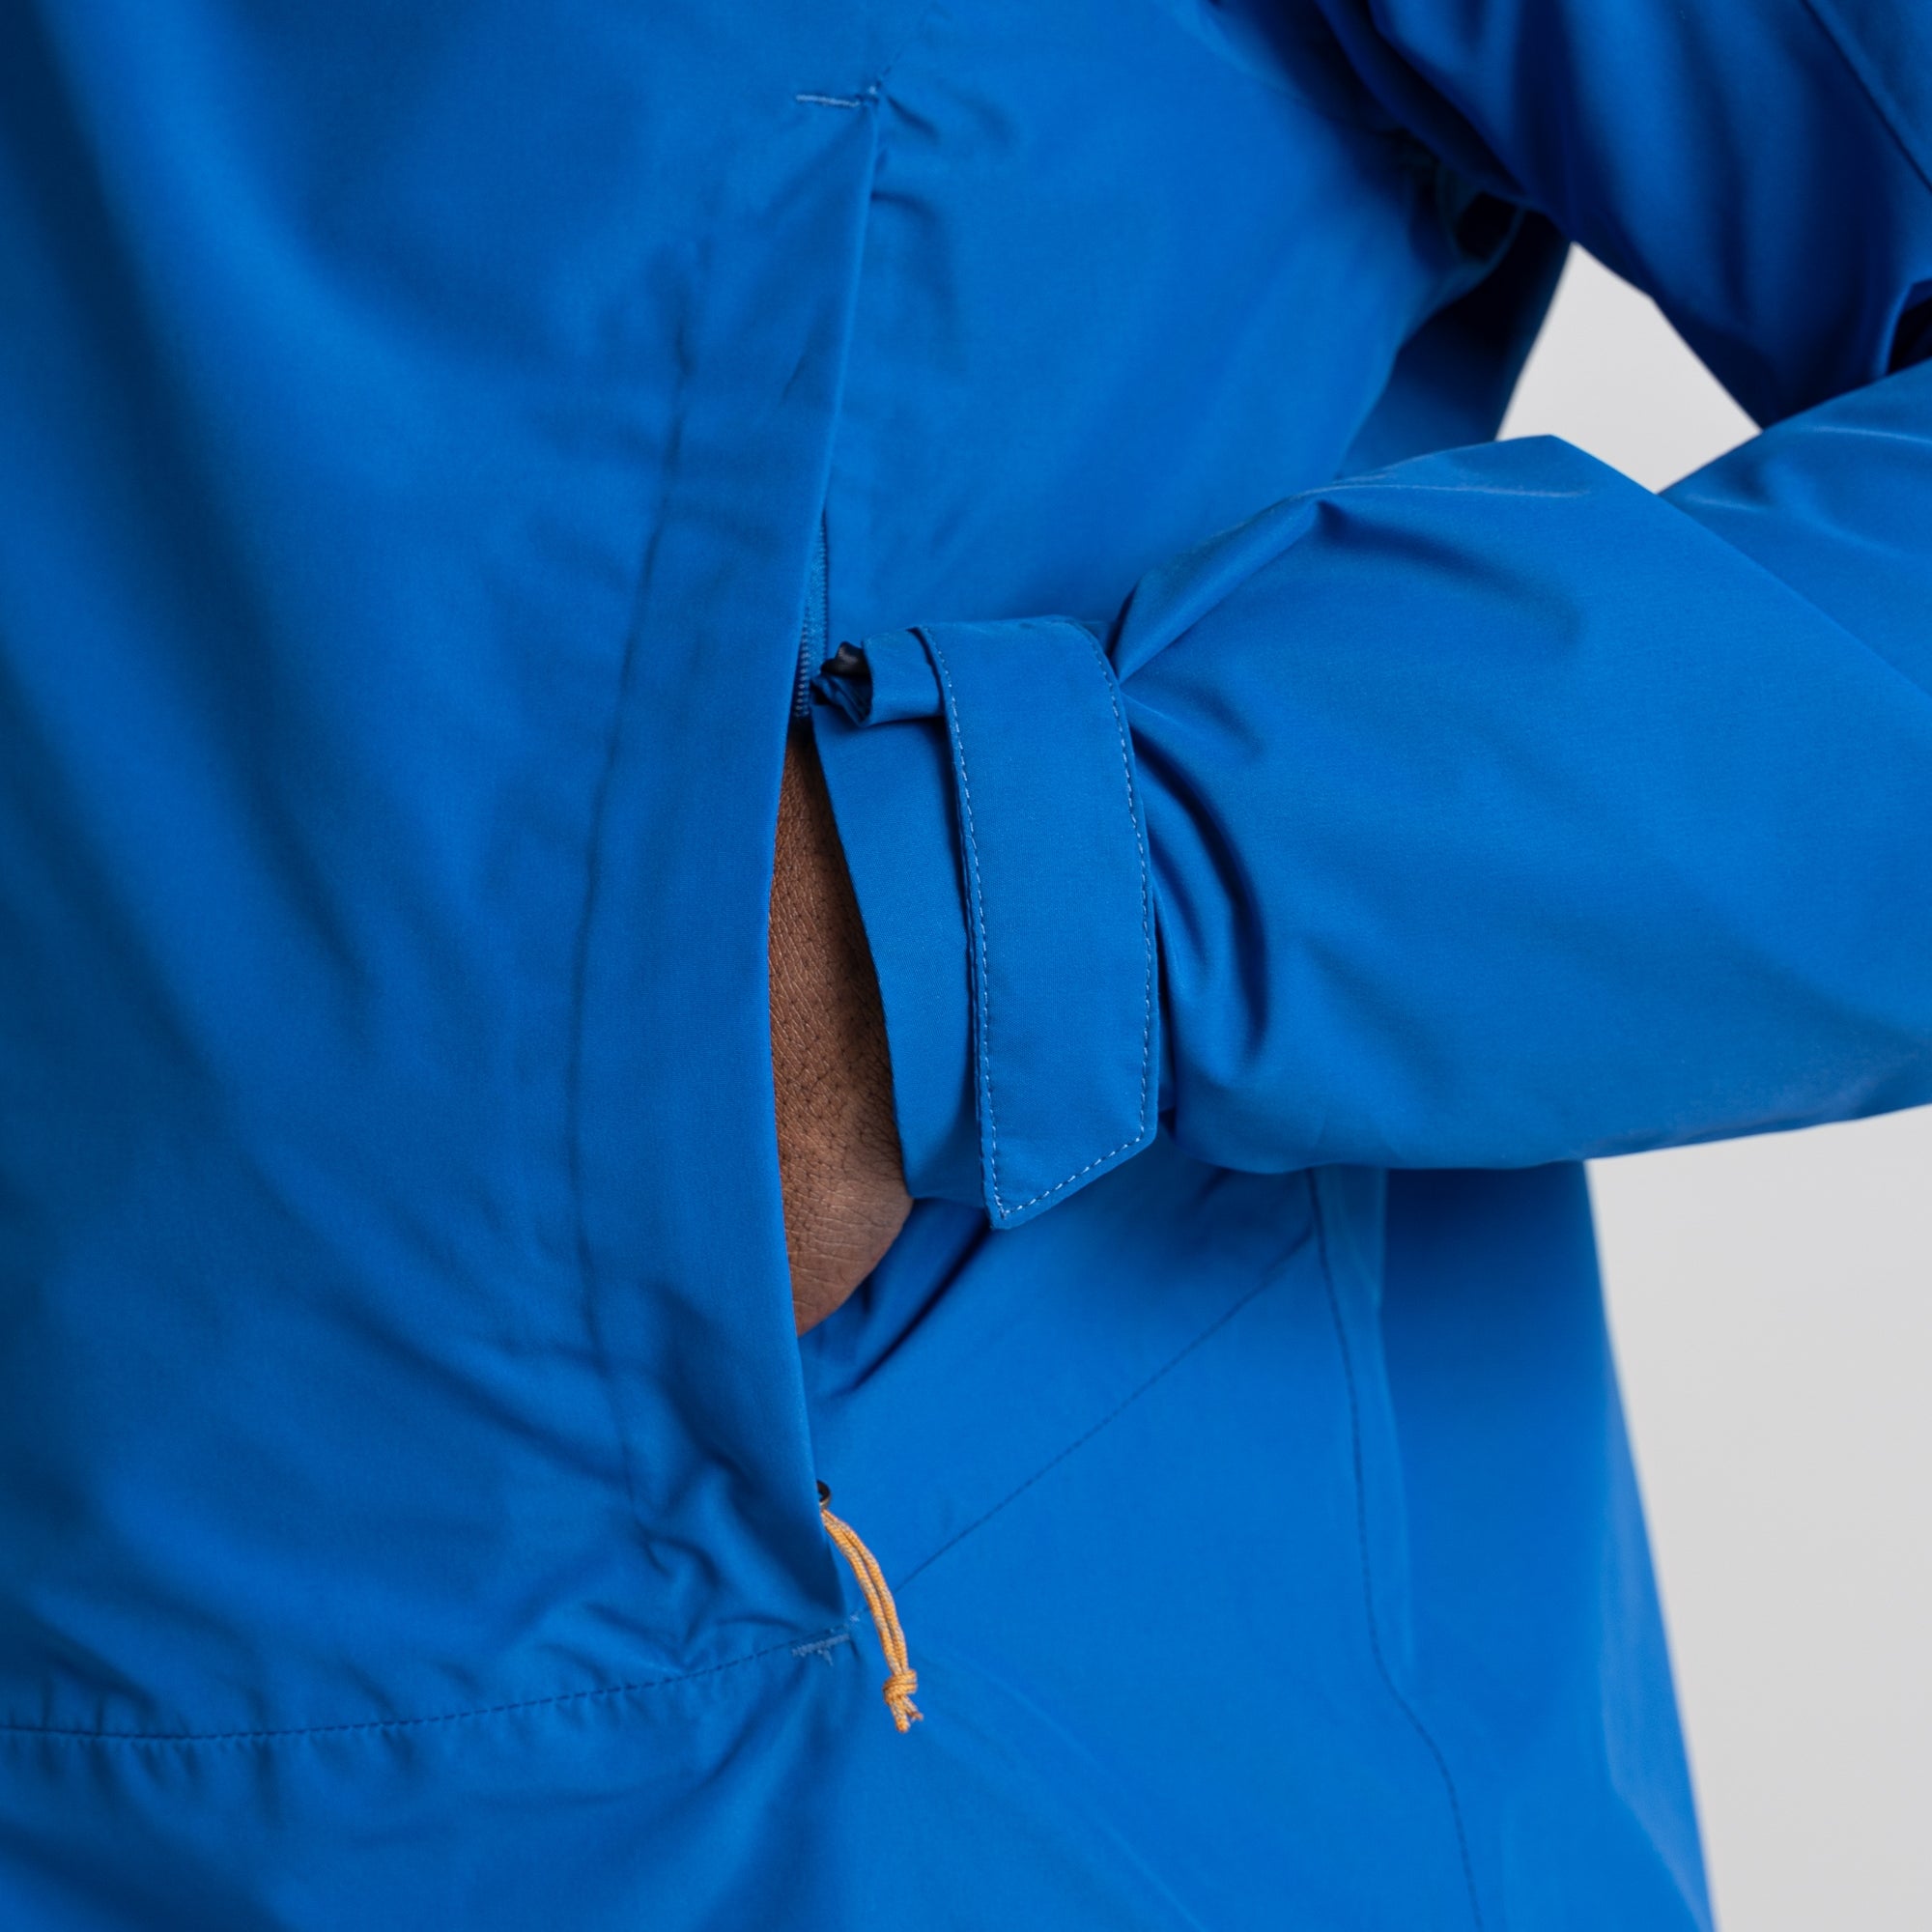 Men's Creevey Jacket | Bolt Blue